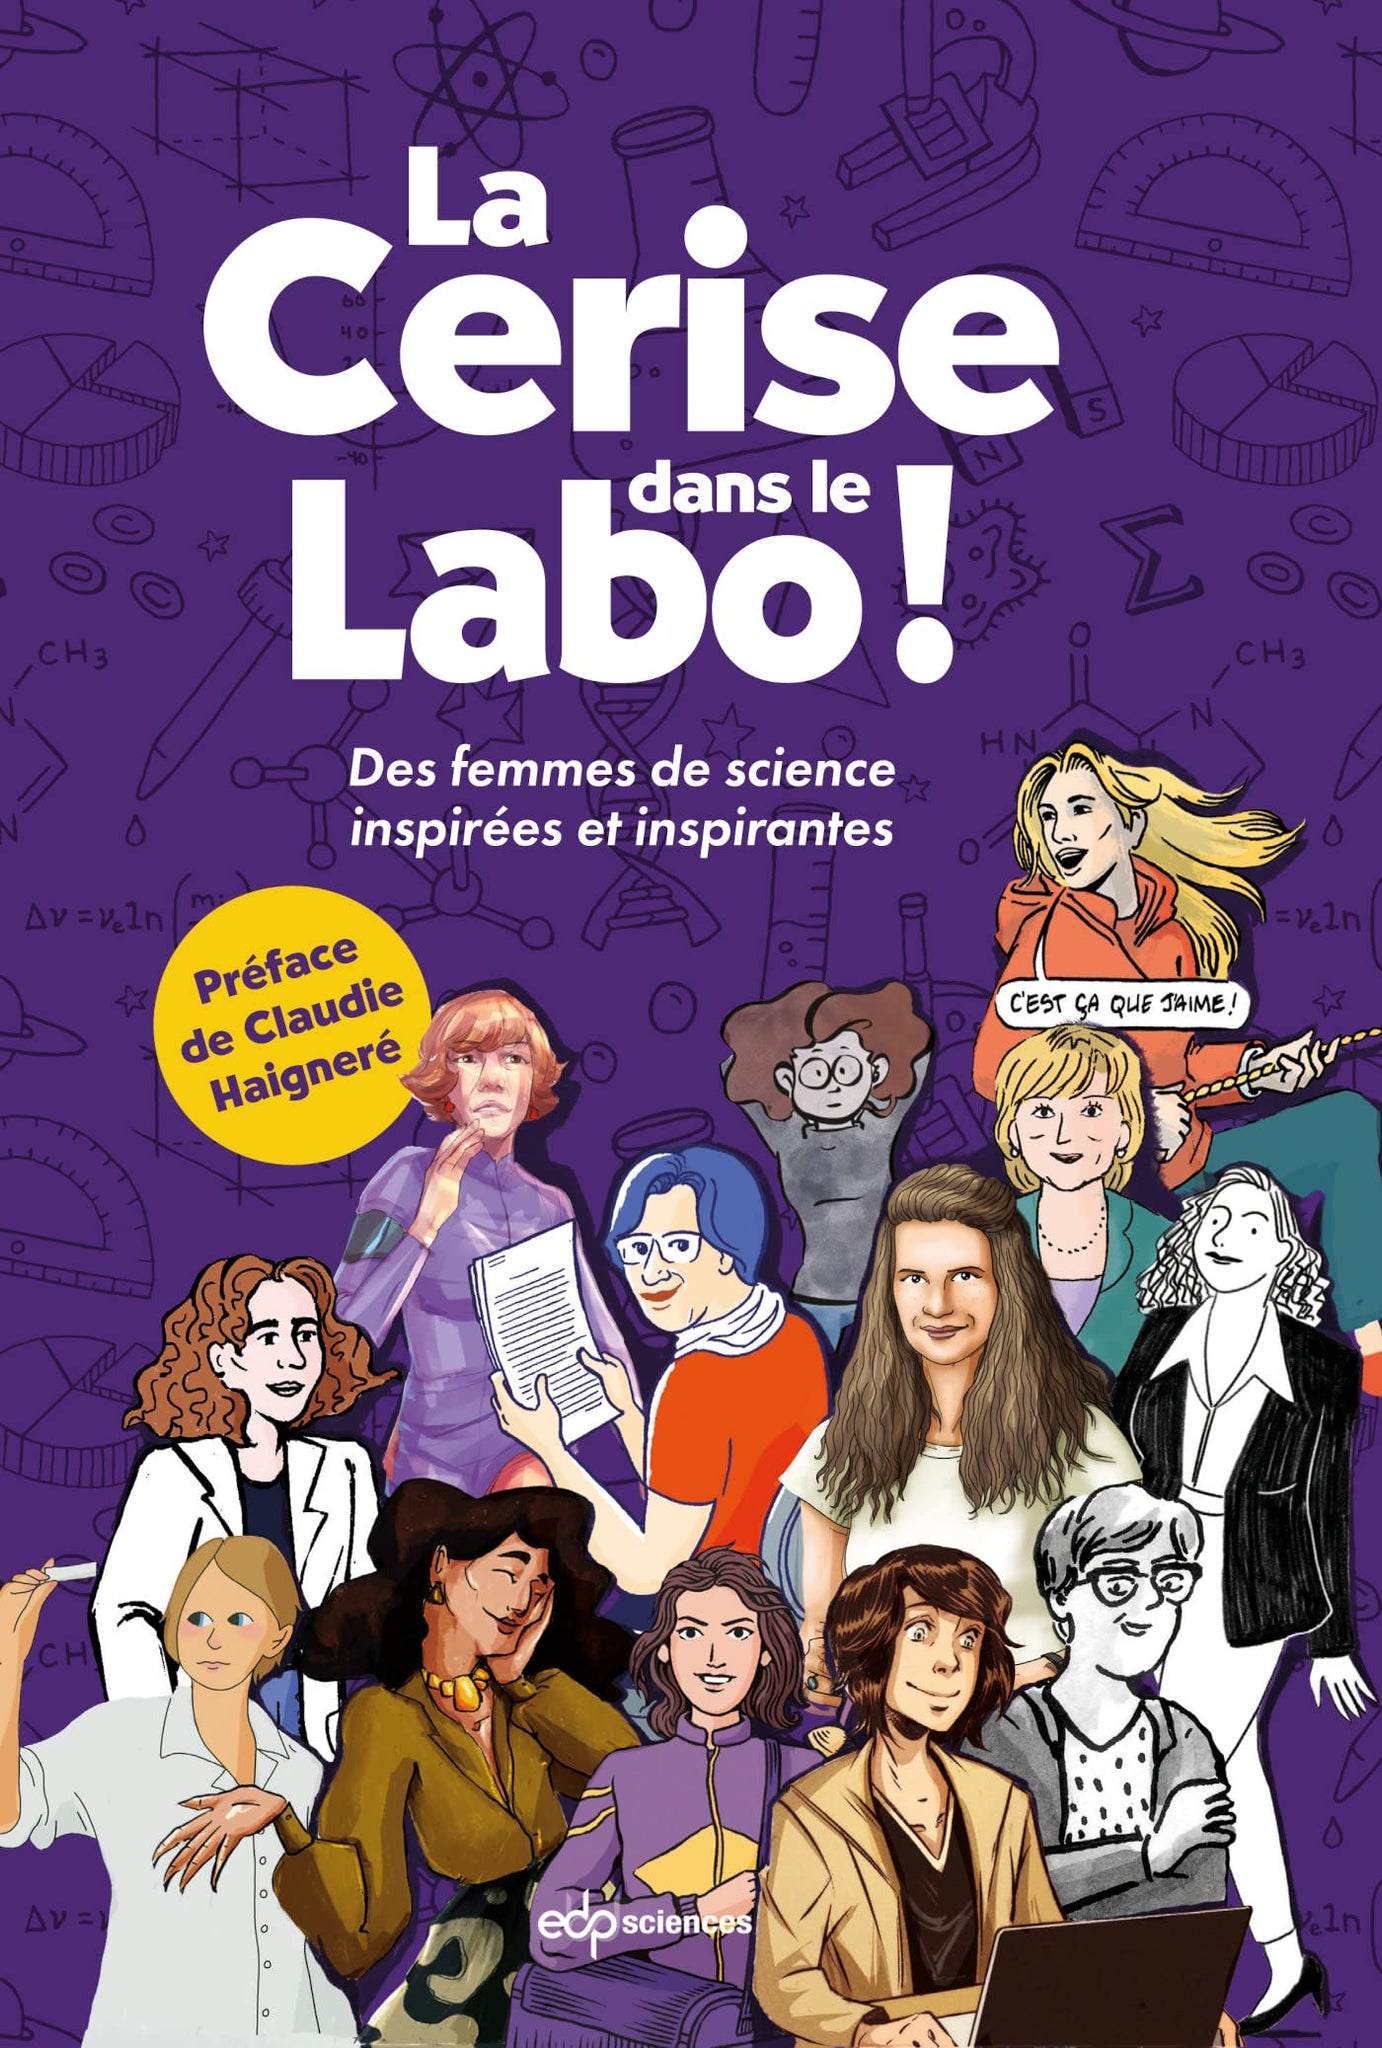 La cerise dans le labo - Lucie Lemoine